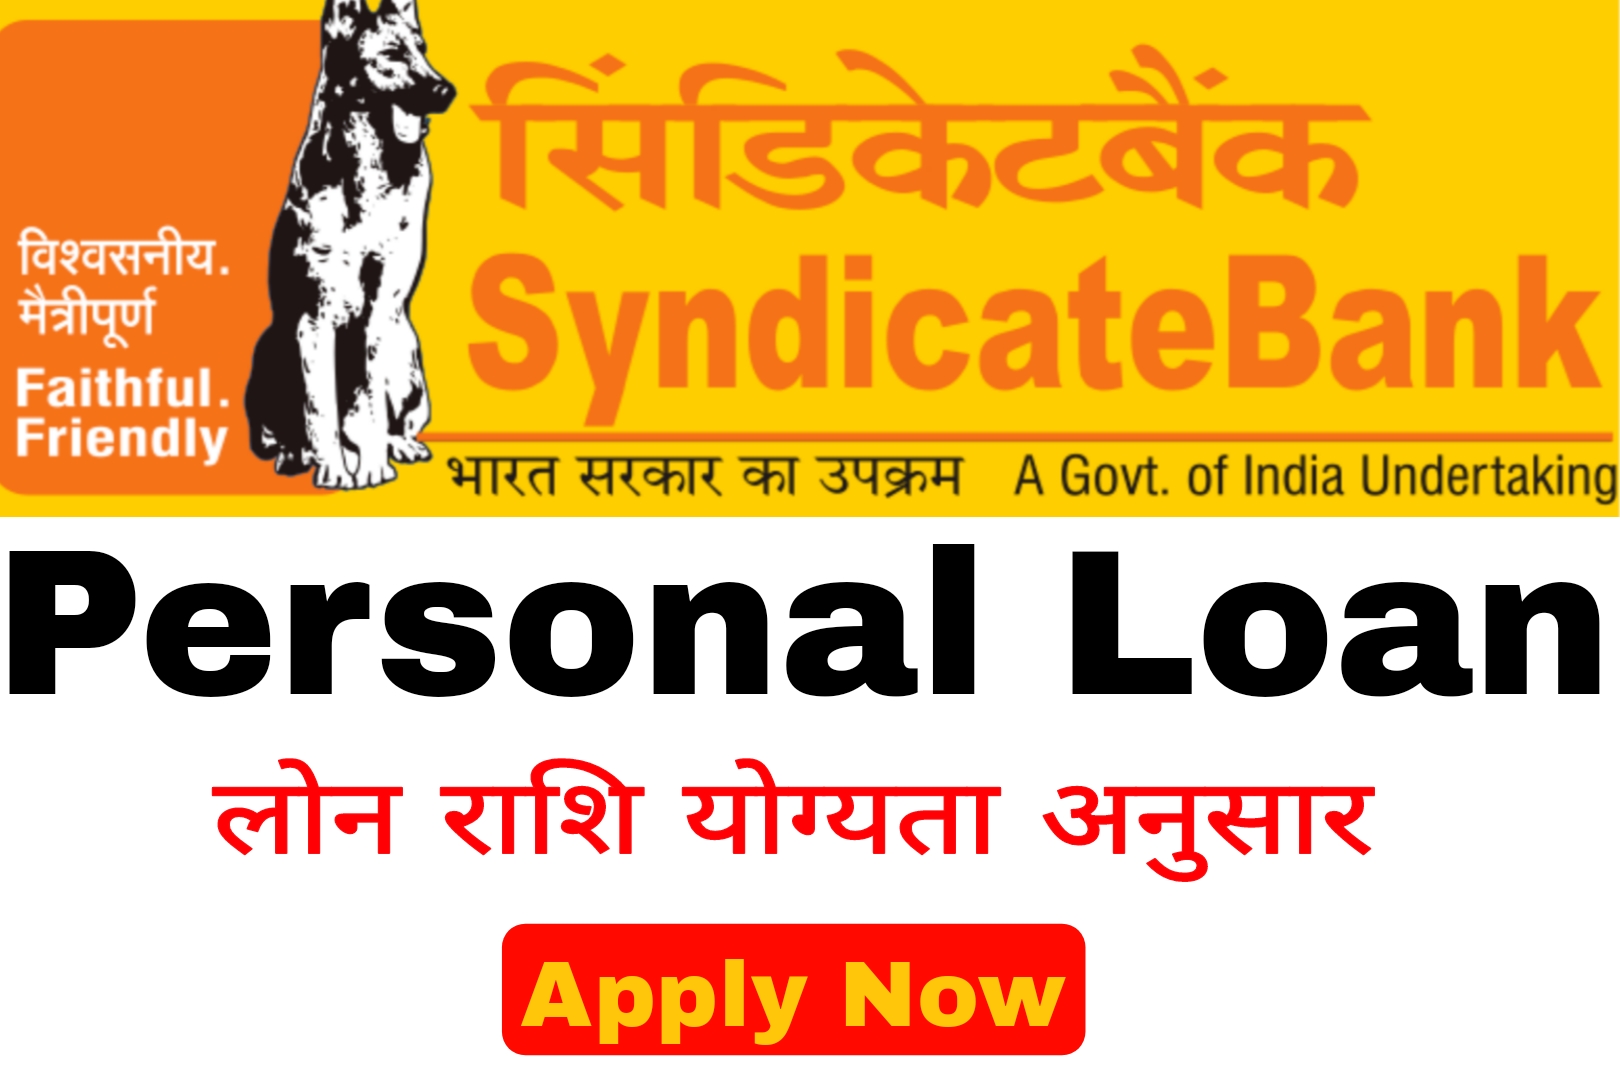 syndicate bank new ifsc code | canara bank ifsc code kya hai | syndicate  bank ifsc code change - YouTube